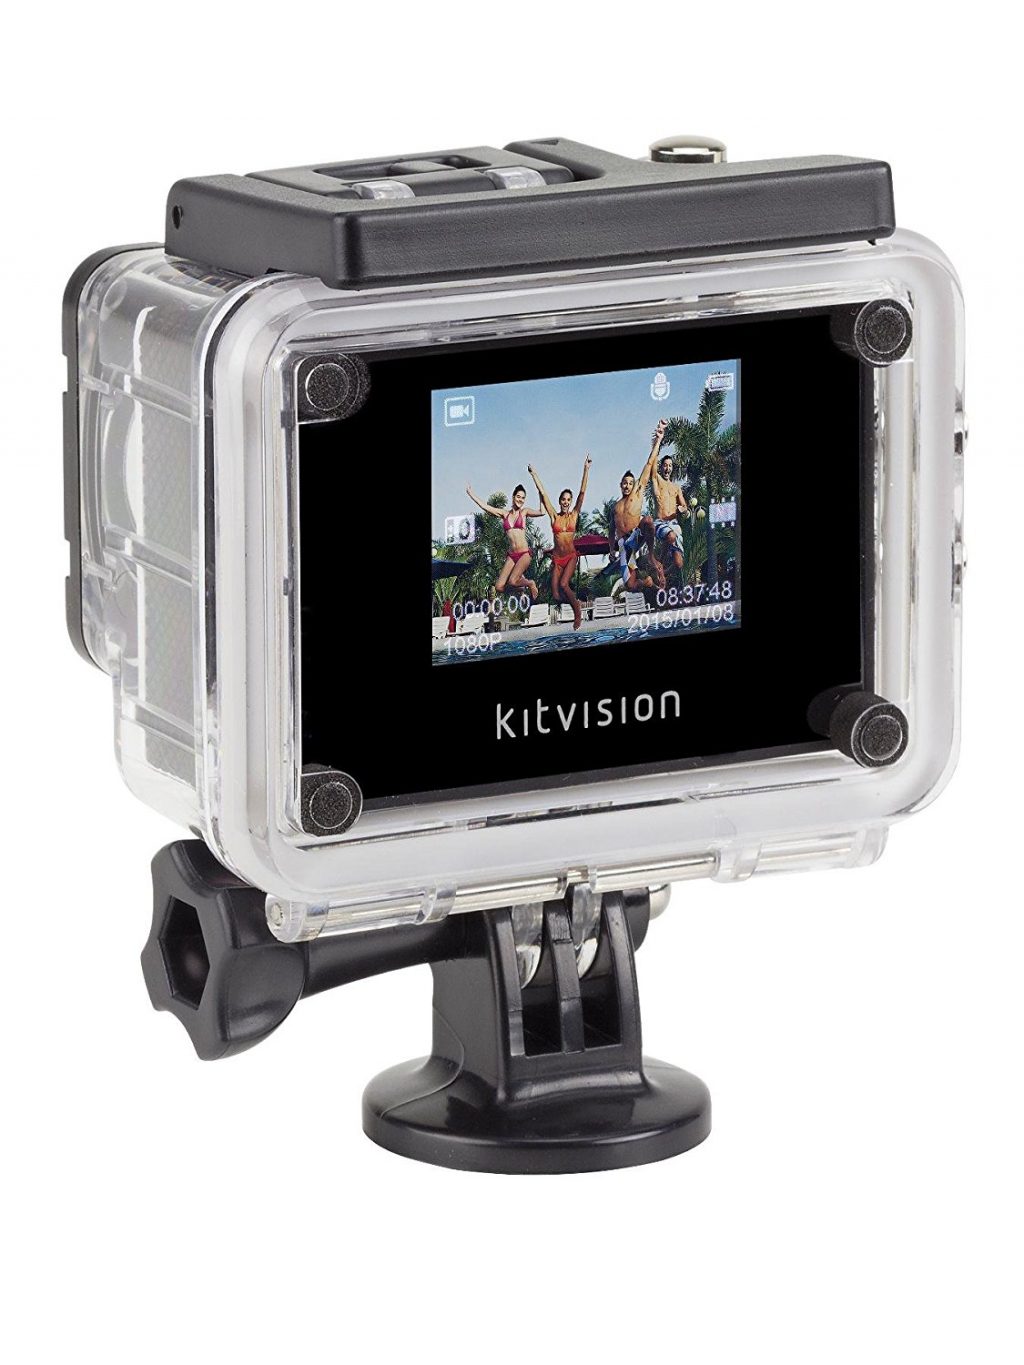 Decouverte Camera Kitvision Escape Hd5 (3)